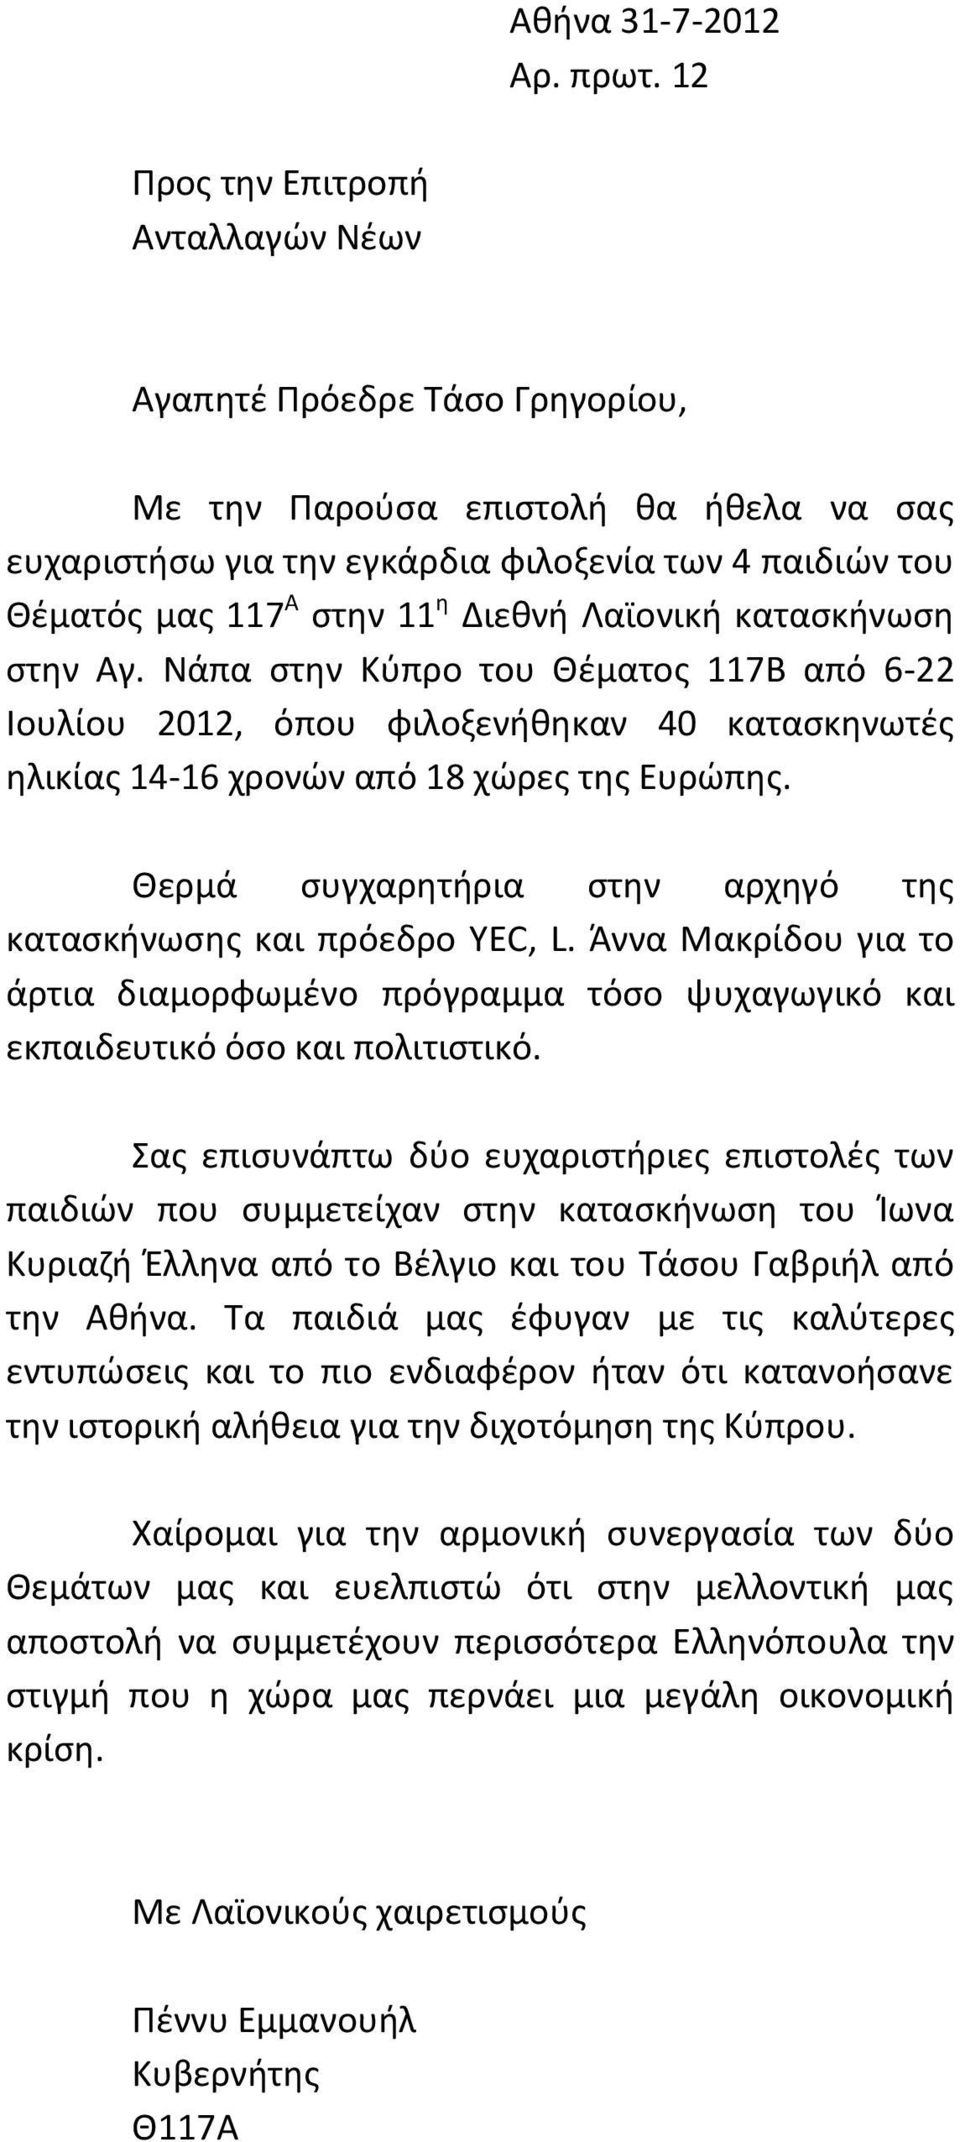 Διεθνή Λαϊονική κατασκήνωση στην Αγ. Νάπα στην Κύπρο του Θέματος 117Β από 6-22 Ιουλίου 2012, όπου φιλοξενήθηκαν 40 κατασκηνωτές ηλικίας 14-16 χρονών από 18 χώρες της Ευρώπης.